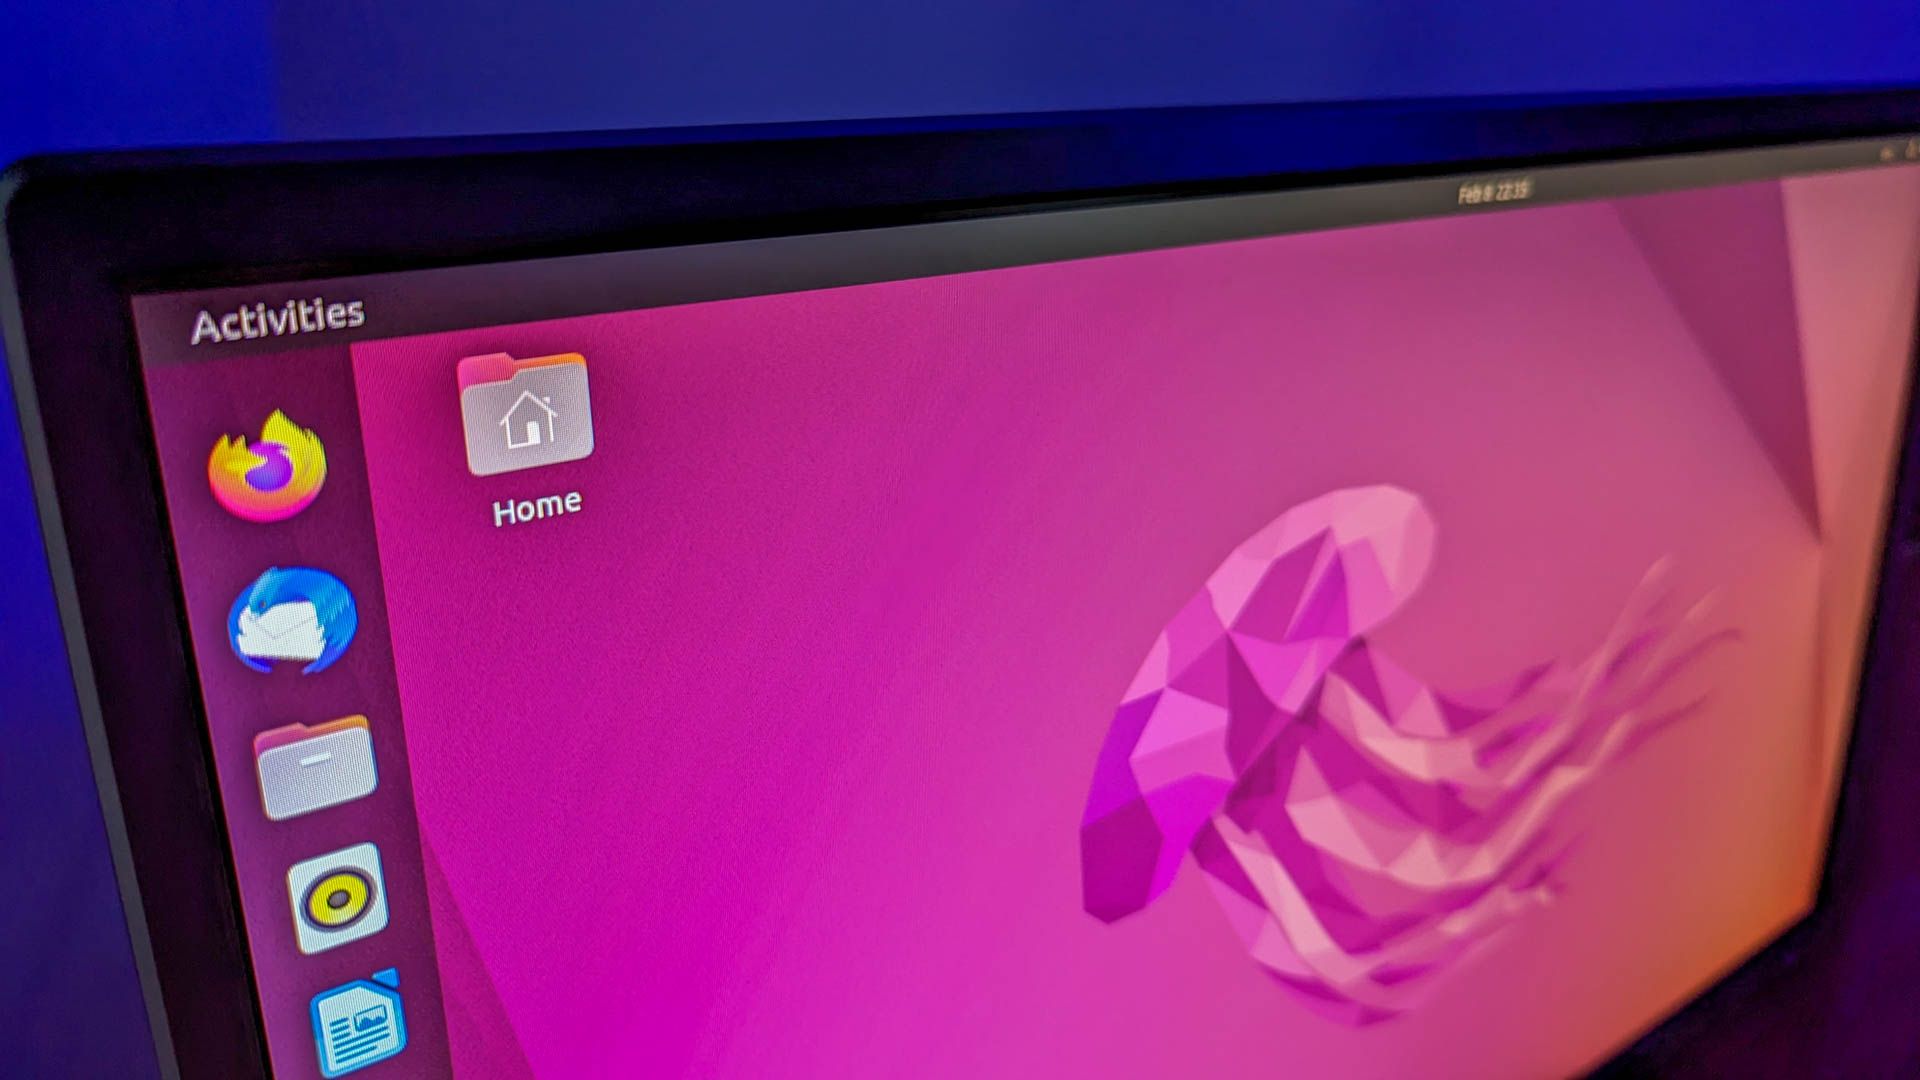 The Ubuntu desktop.